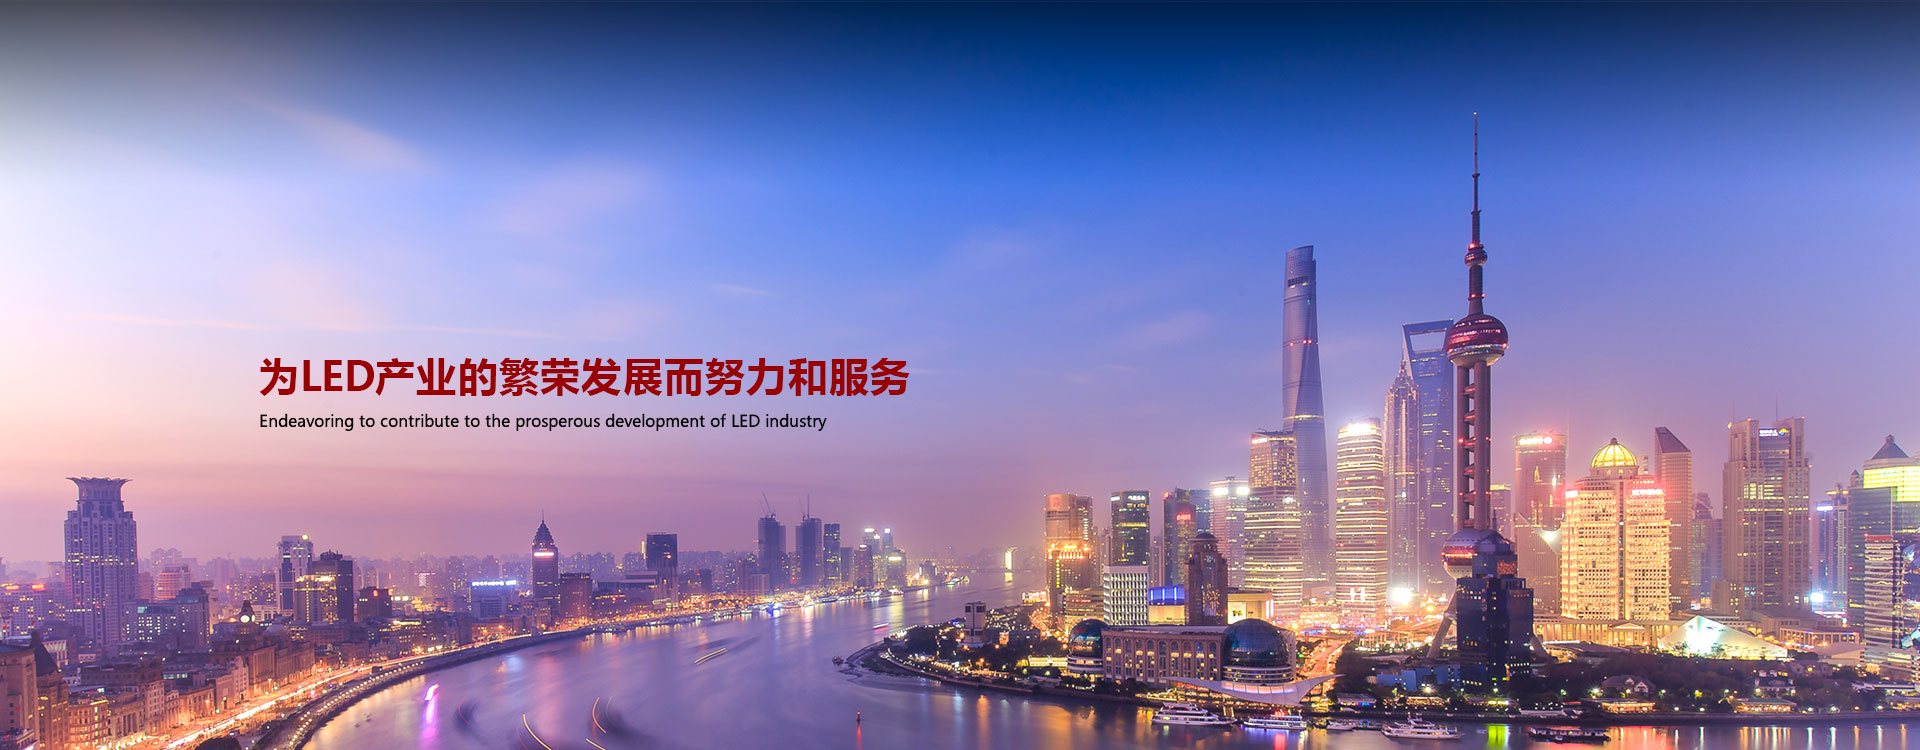 开元游戏大厅app(中国游)官方网站